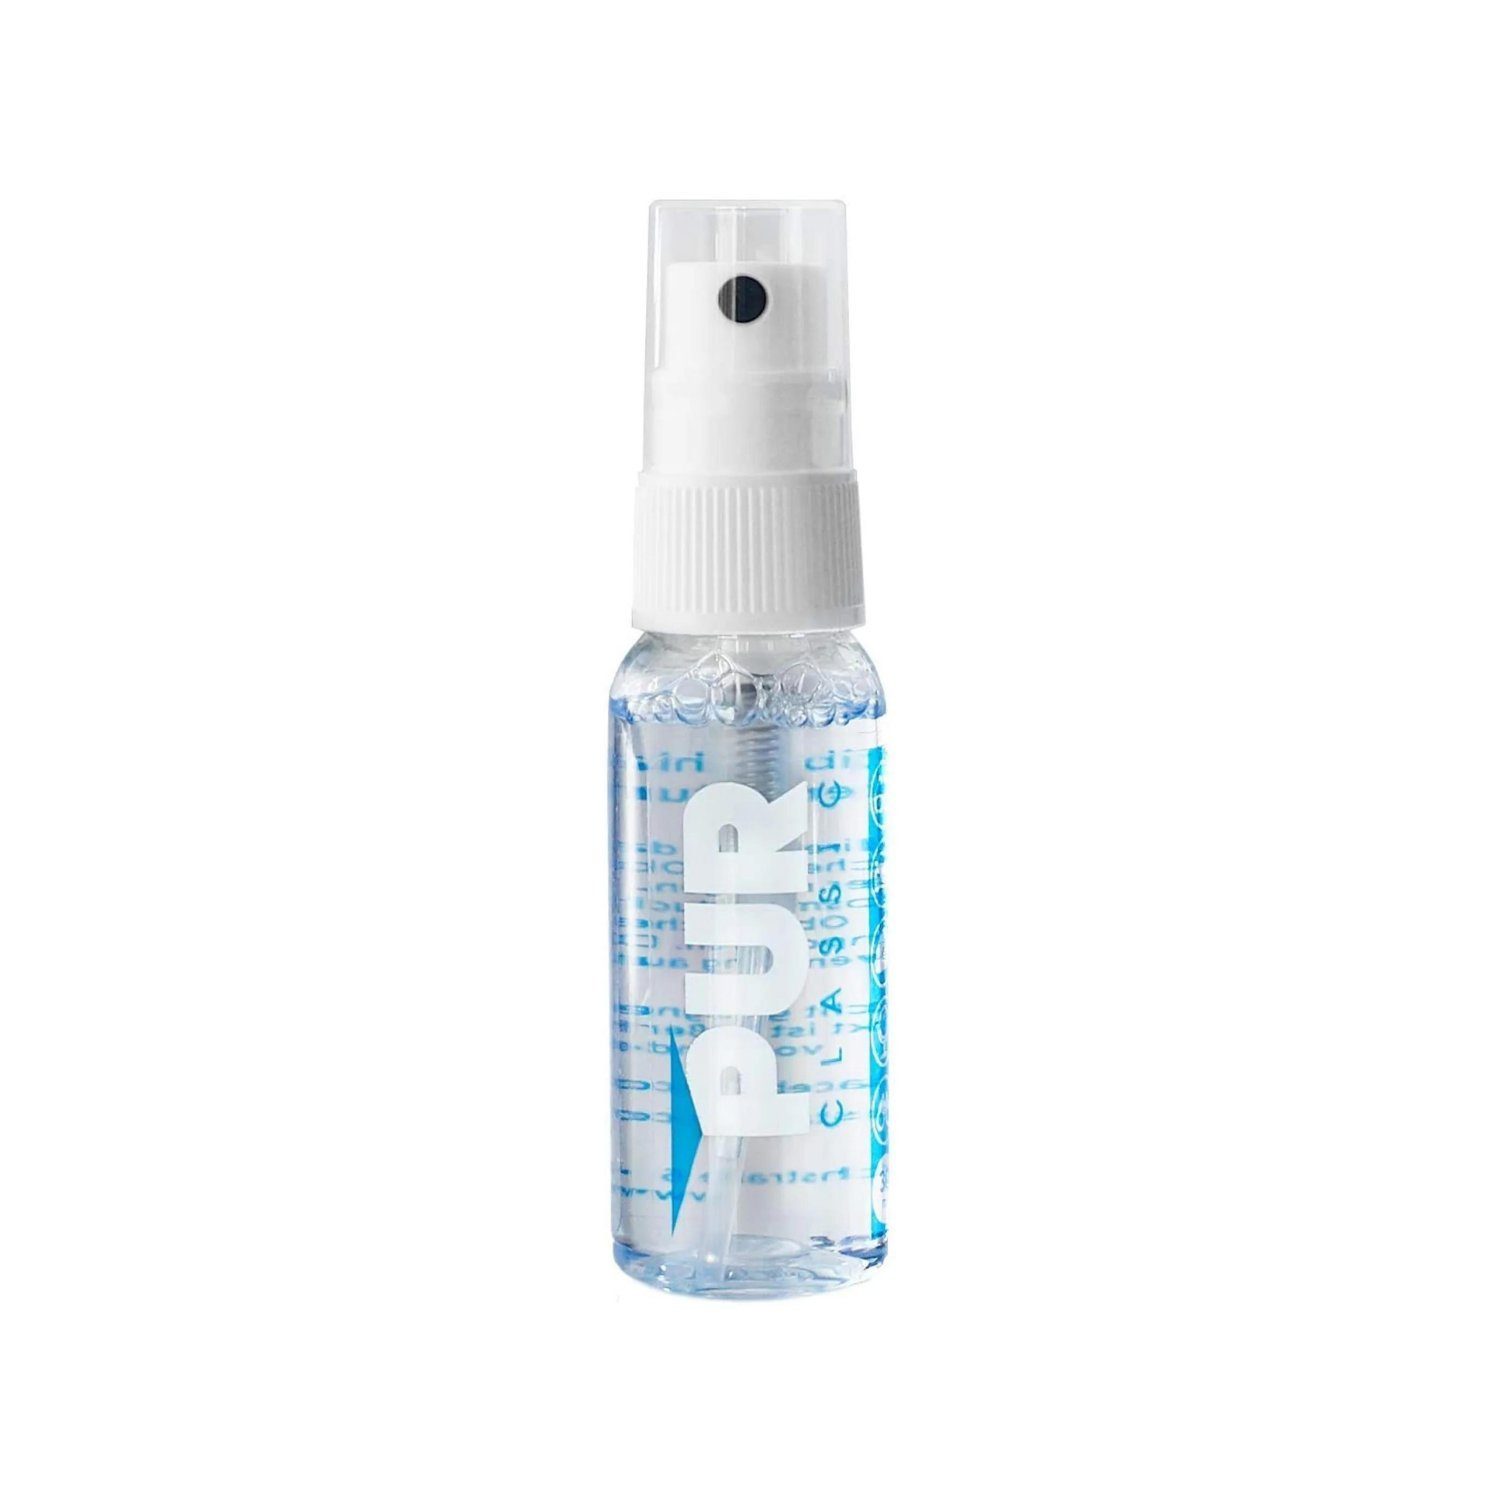 [Sehr berühmt] PUR PREMIUM Spray Ideal Antibeschlag für Autoscheiben,Helmvisiere, Bad Brillen, Brille